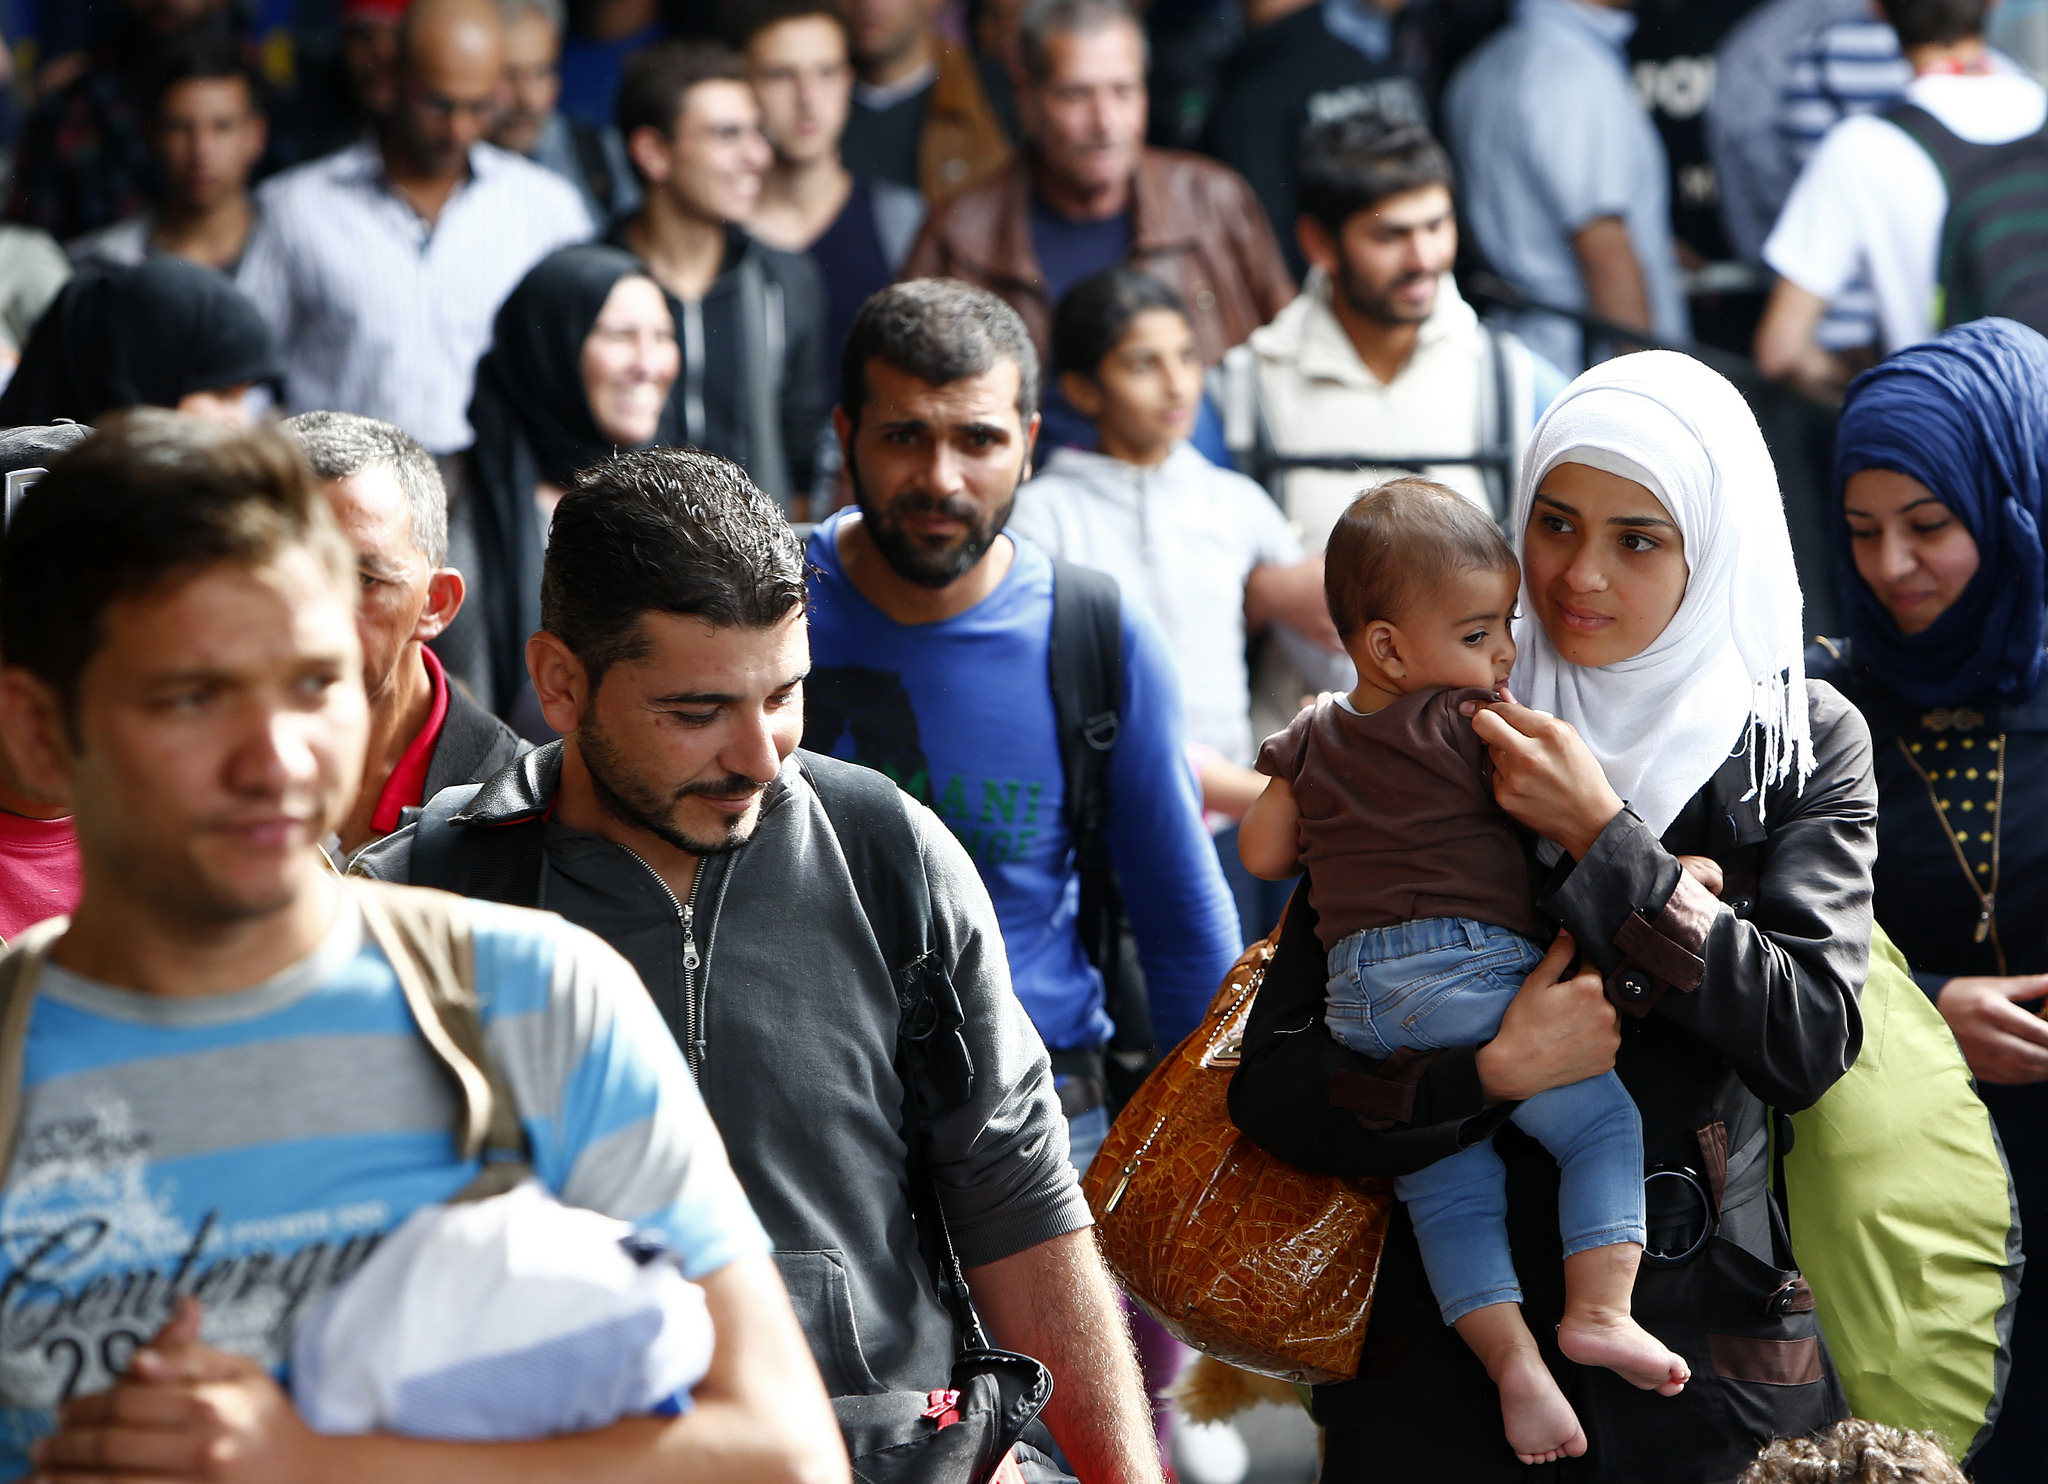 Άσχημα τα νέα για την Ευρώπη: Αυξάνεται ο μουσουλμανικός πληθυσμός – Μειώνεται ο χριστιανικός